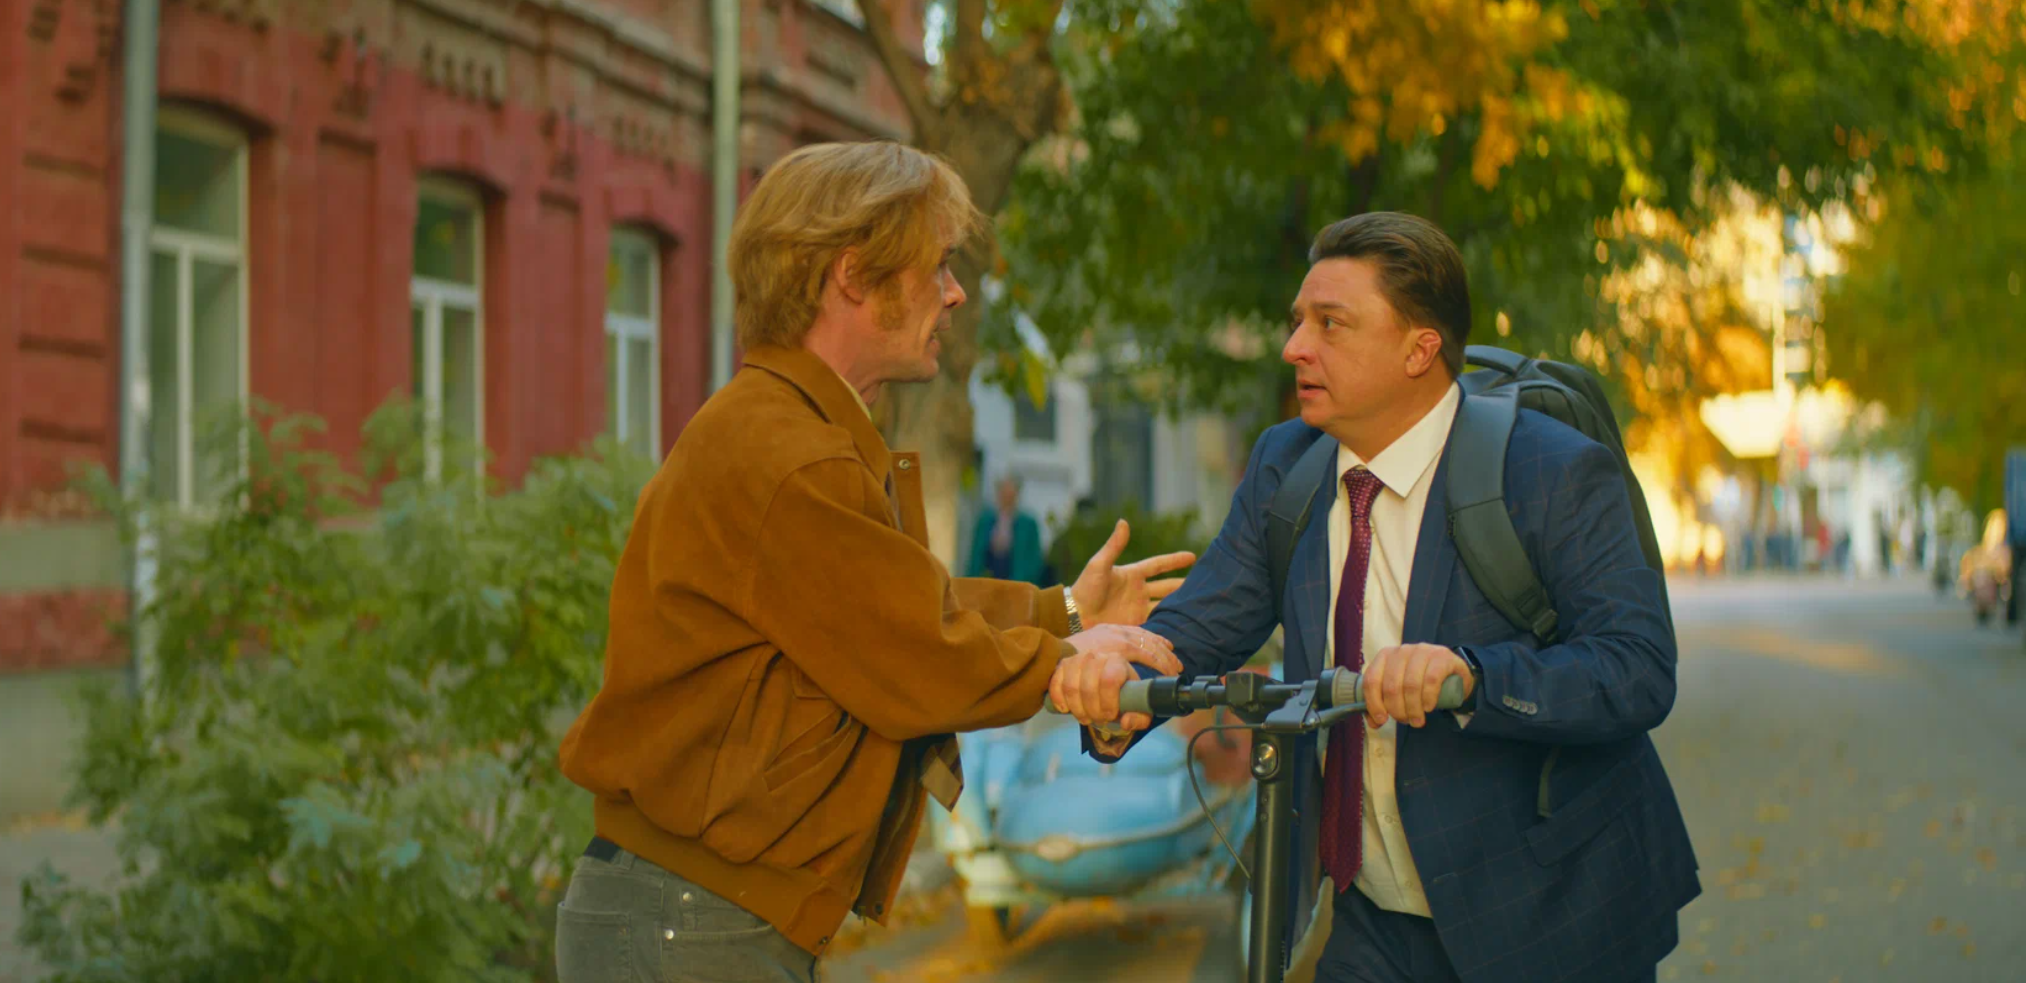 Тимофей Молодцов встречает нового мэра. Кадр из сериала